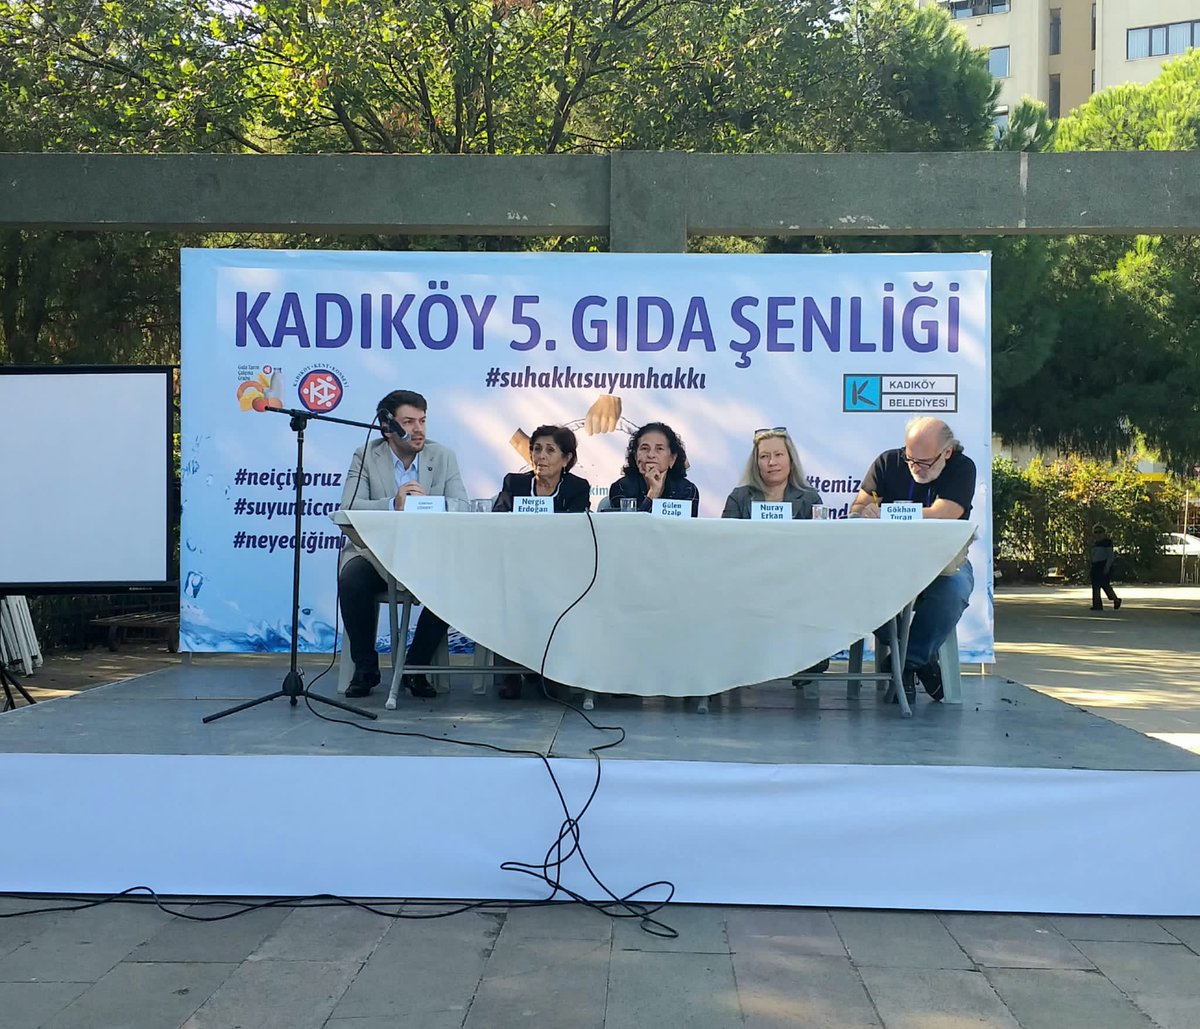 @kadikoybelediye'nin ev sahipliğinde düzenlenen Kadıköy Gıda Şenliği'nde 'Su Haktır' konulu panelde çok değerli bilim insanlarıyla birlikte gıda güvenliği ve #SuHakkı konularını ele aldık.

Suyumuza sahip çıkabilmek için su ve #SuHakkı bilincinin gelişmesi elzemdir.